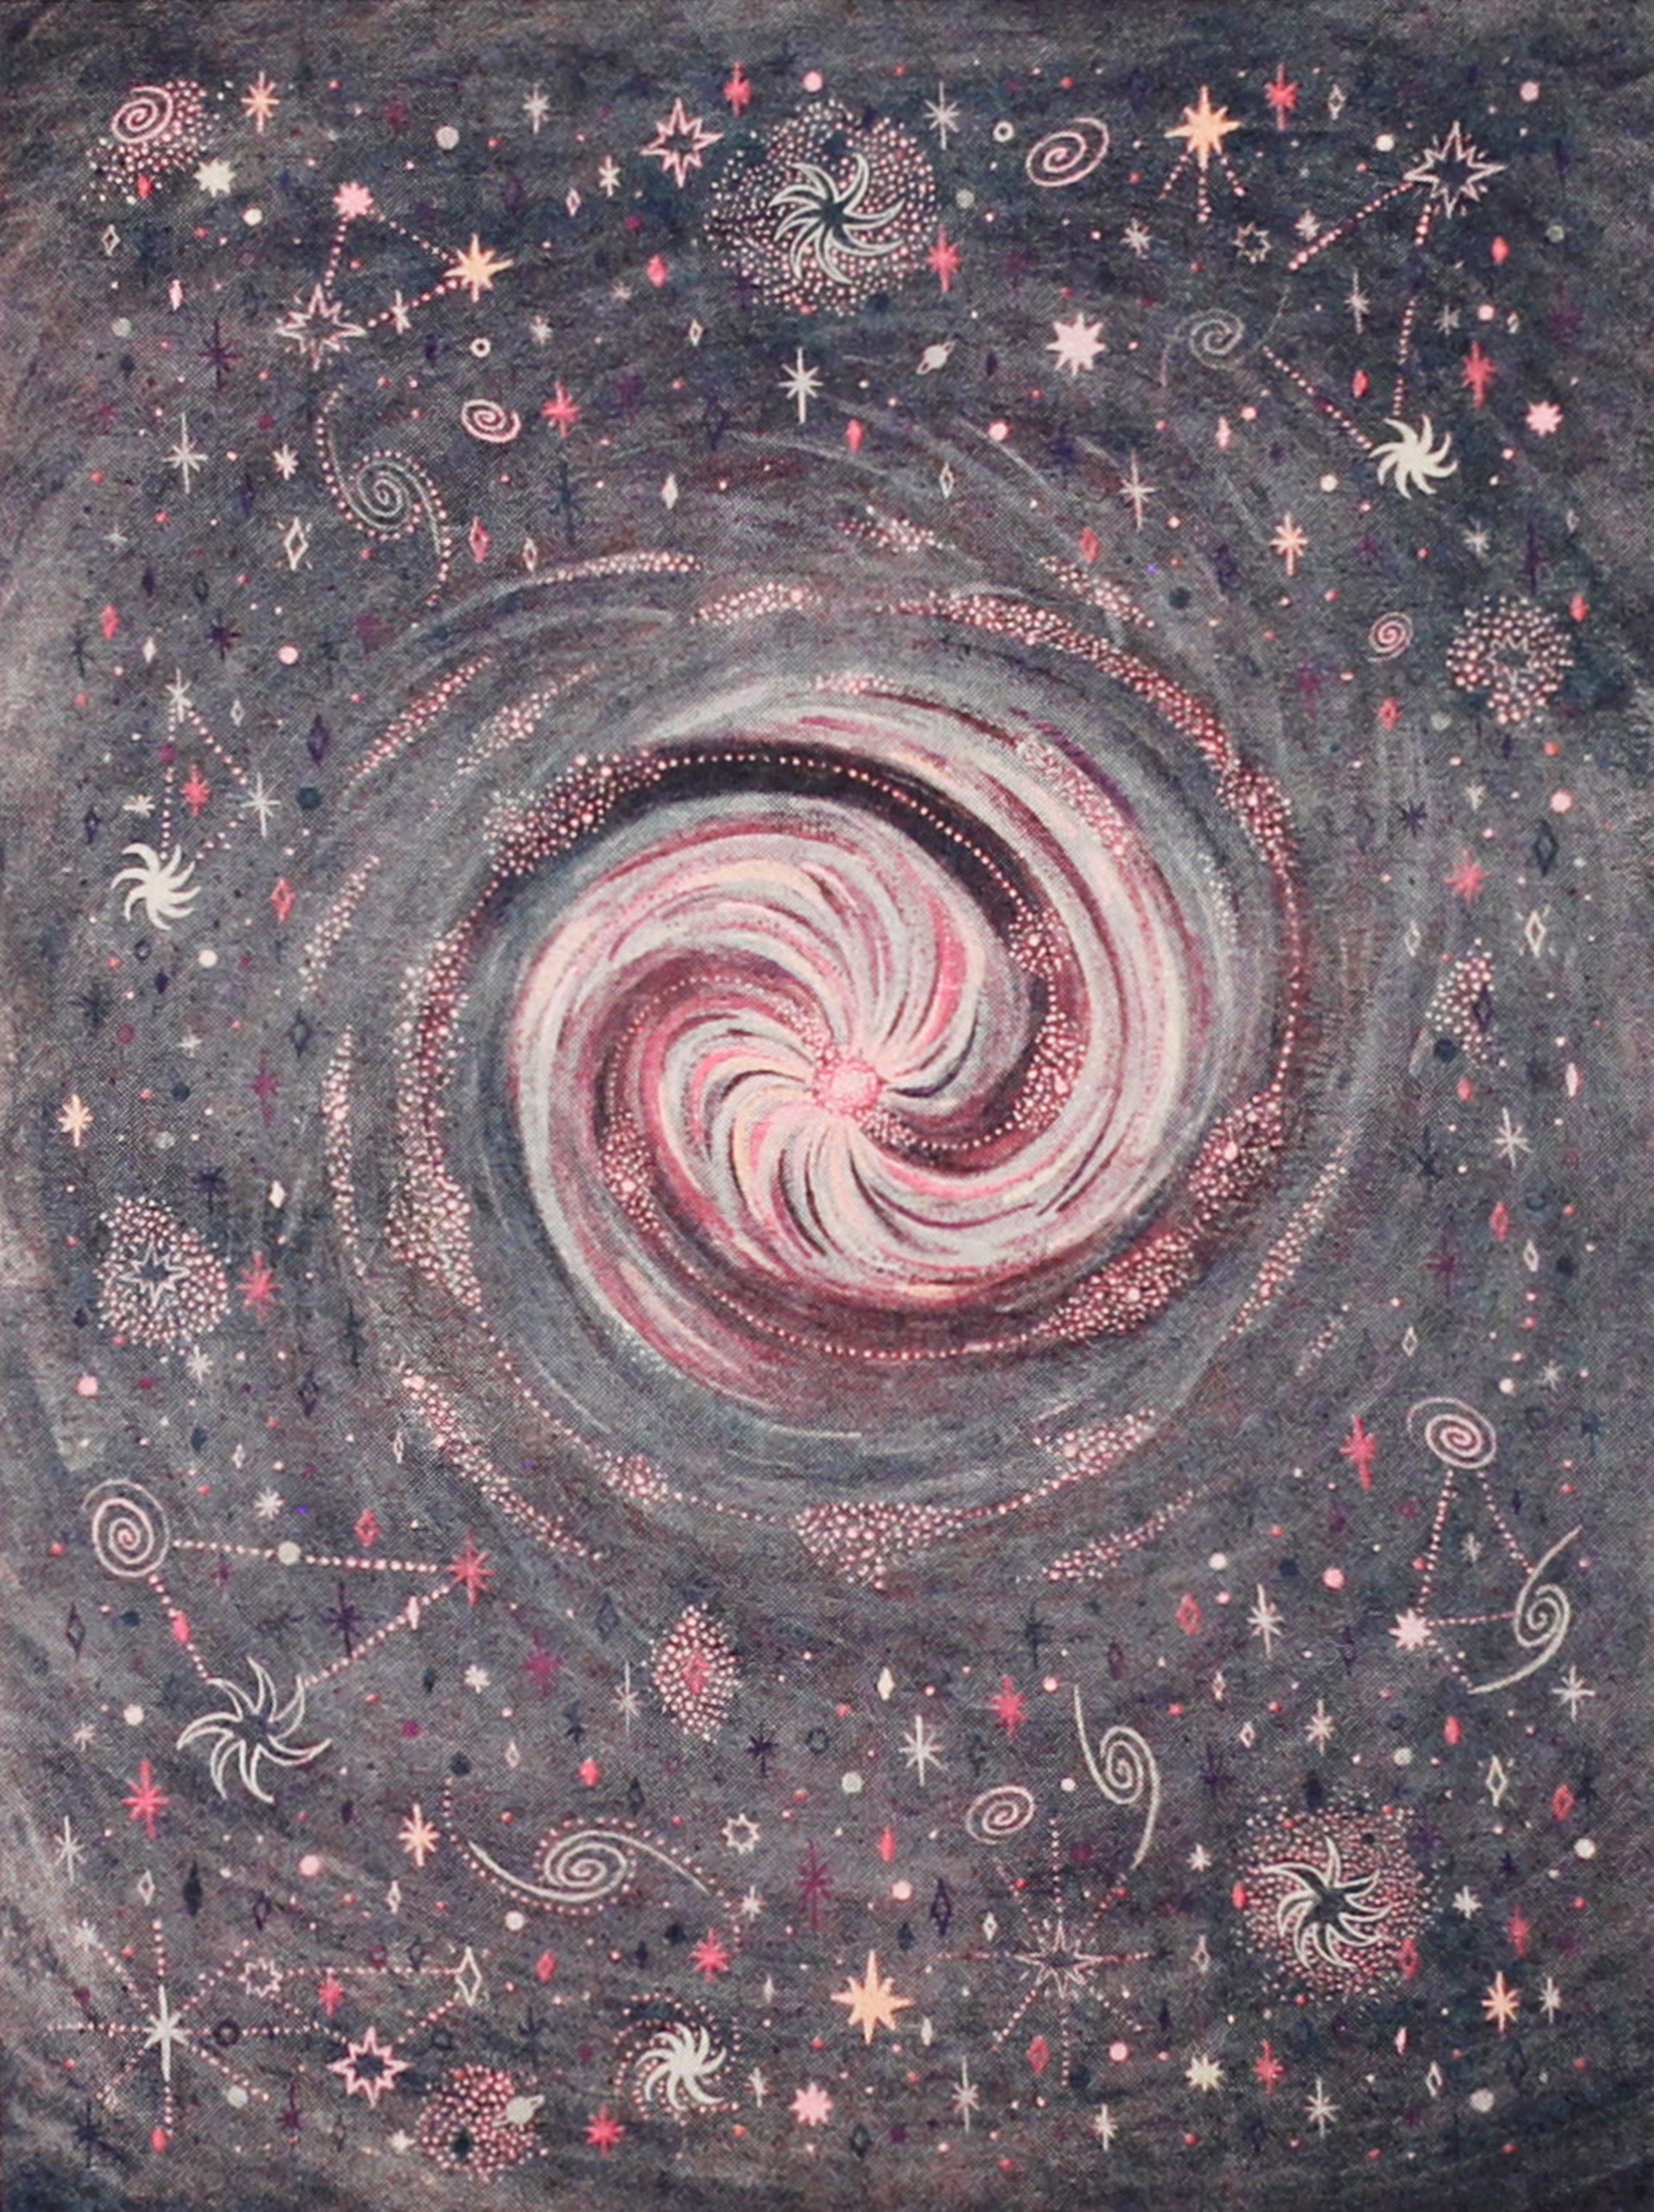 Galaxia by Mirel Fraga